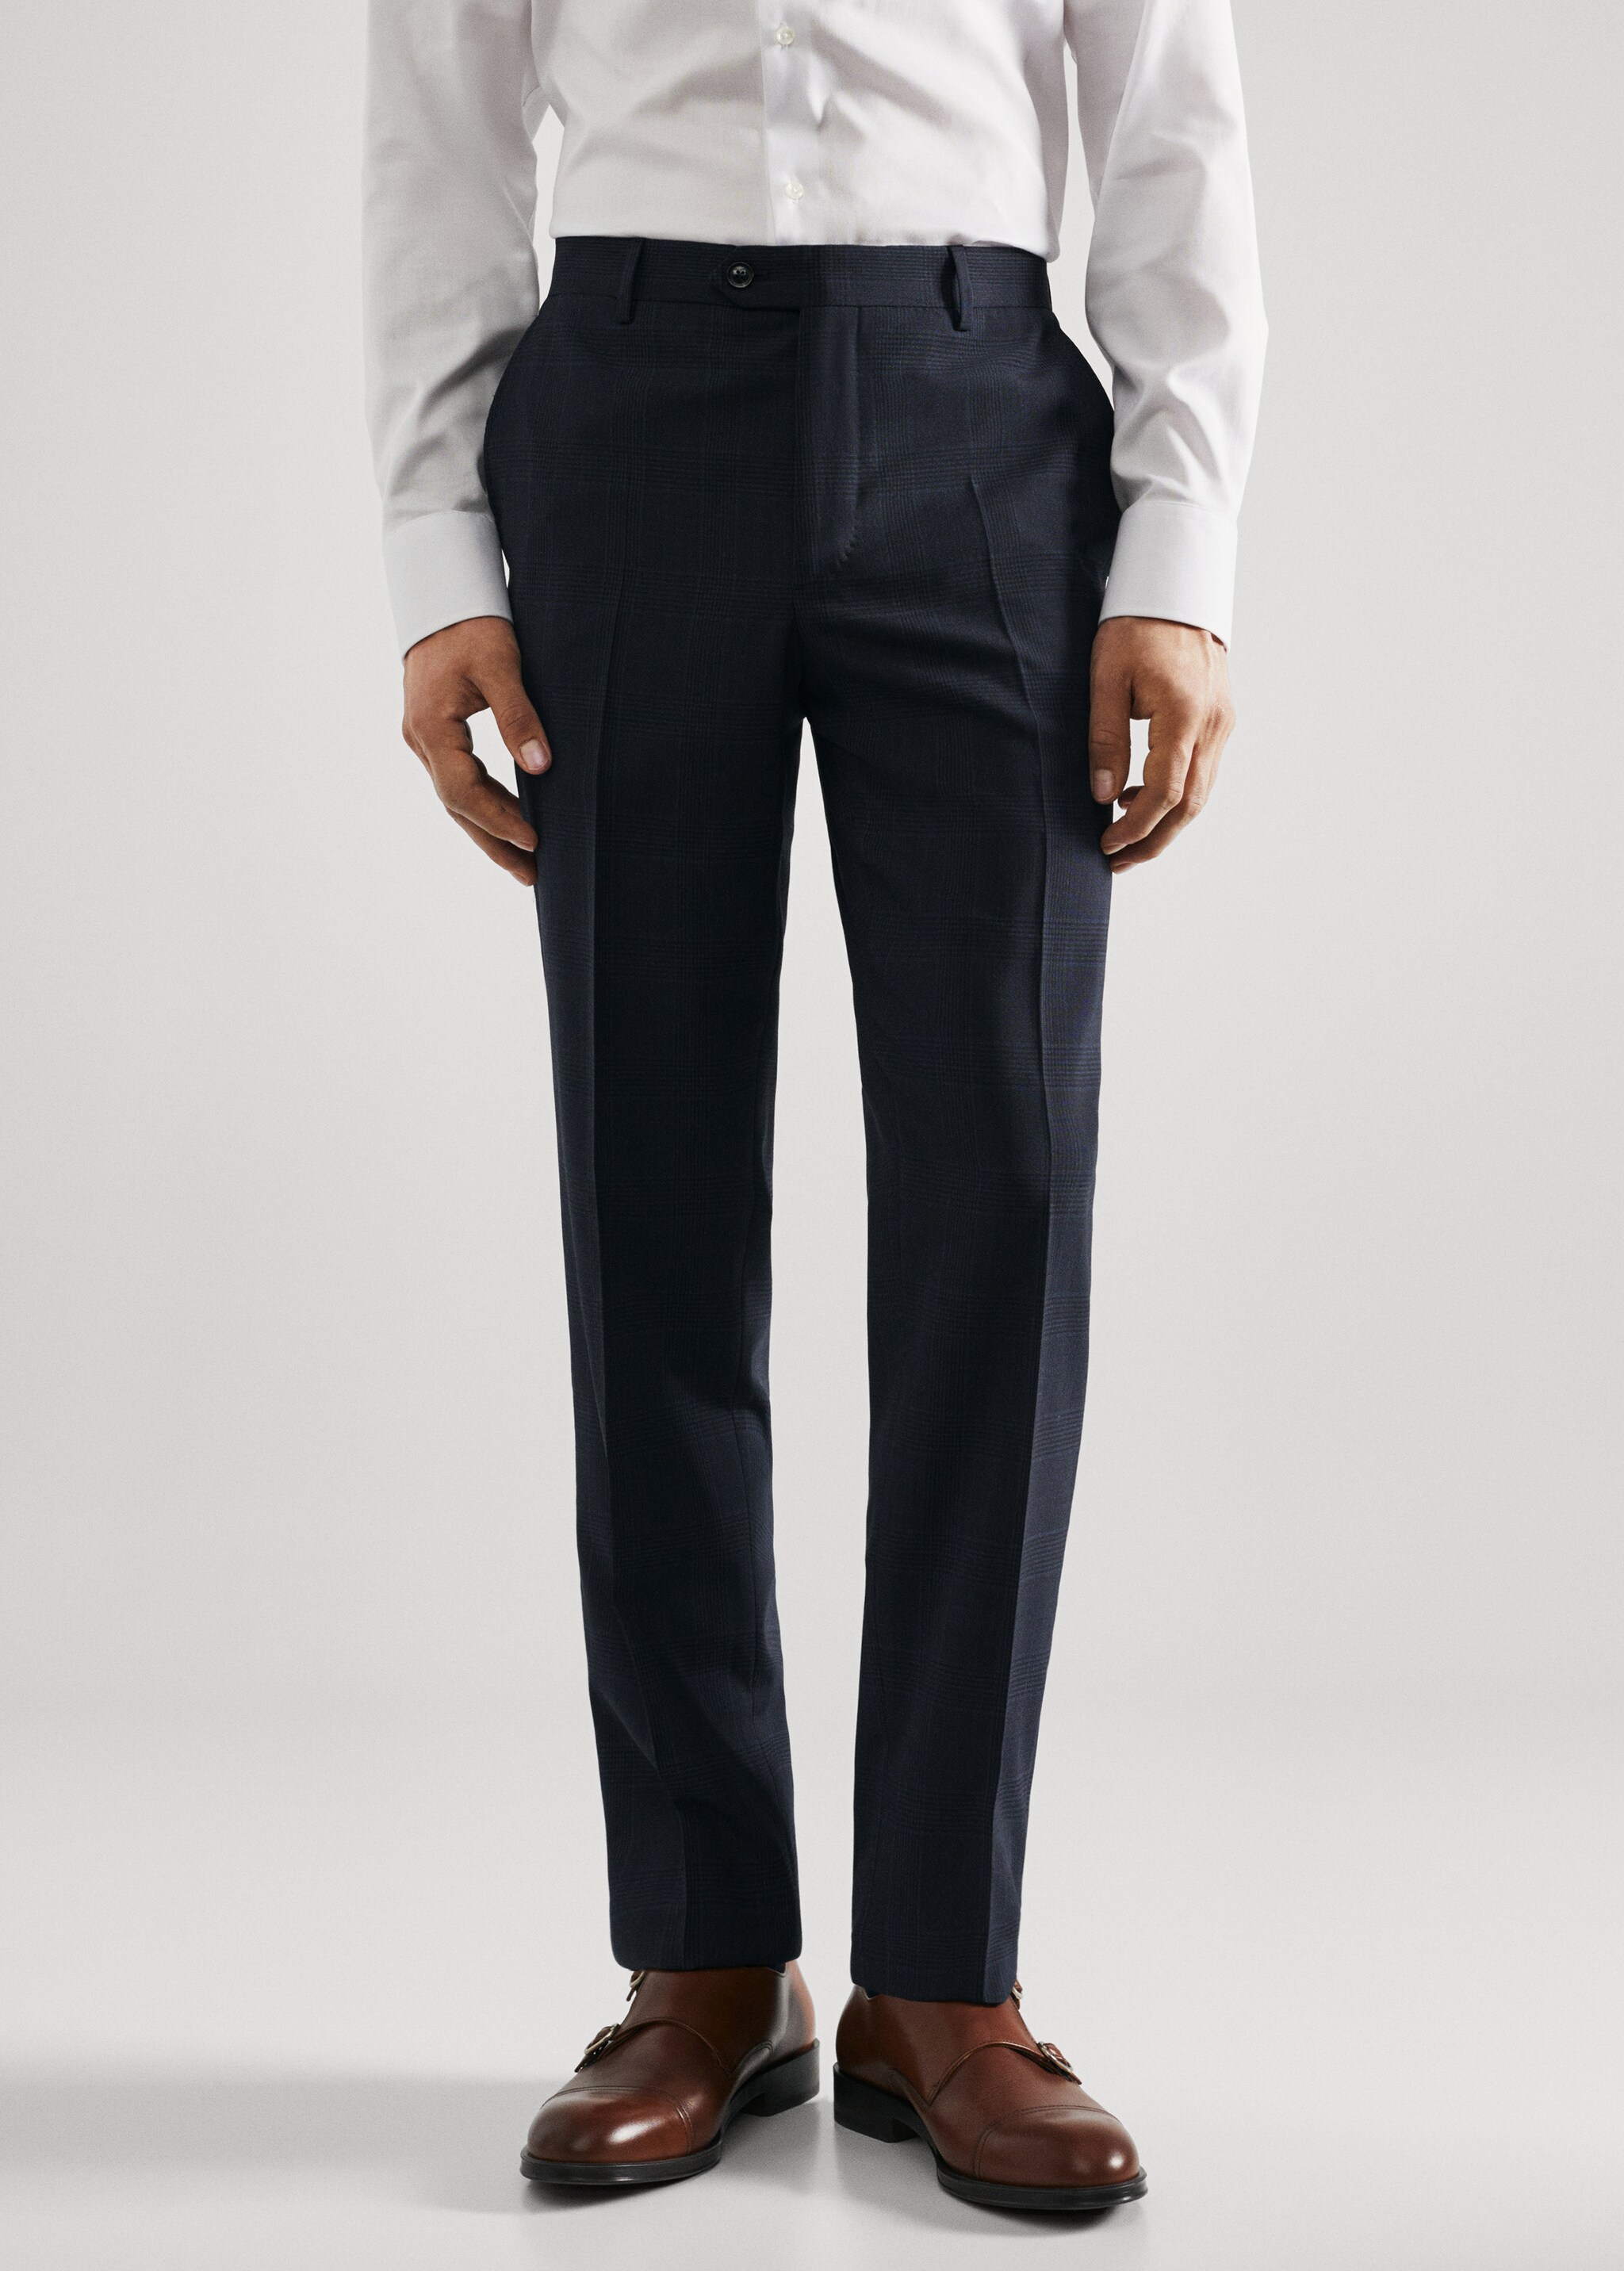 Slim fit virgin wool suit trousers - Medium plane